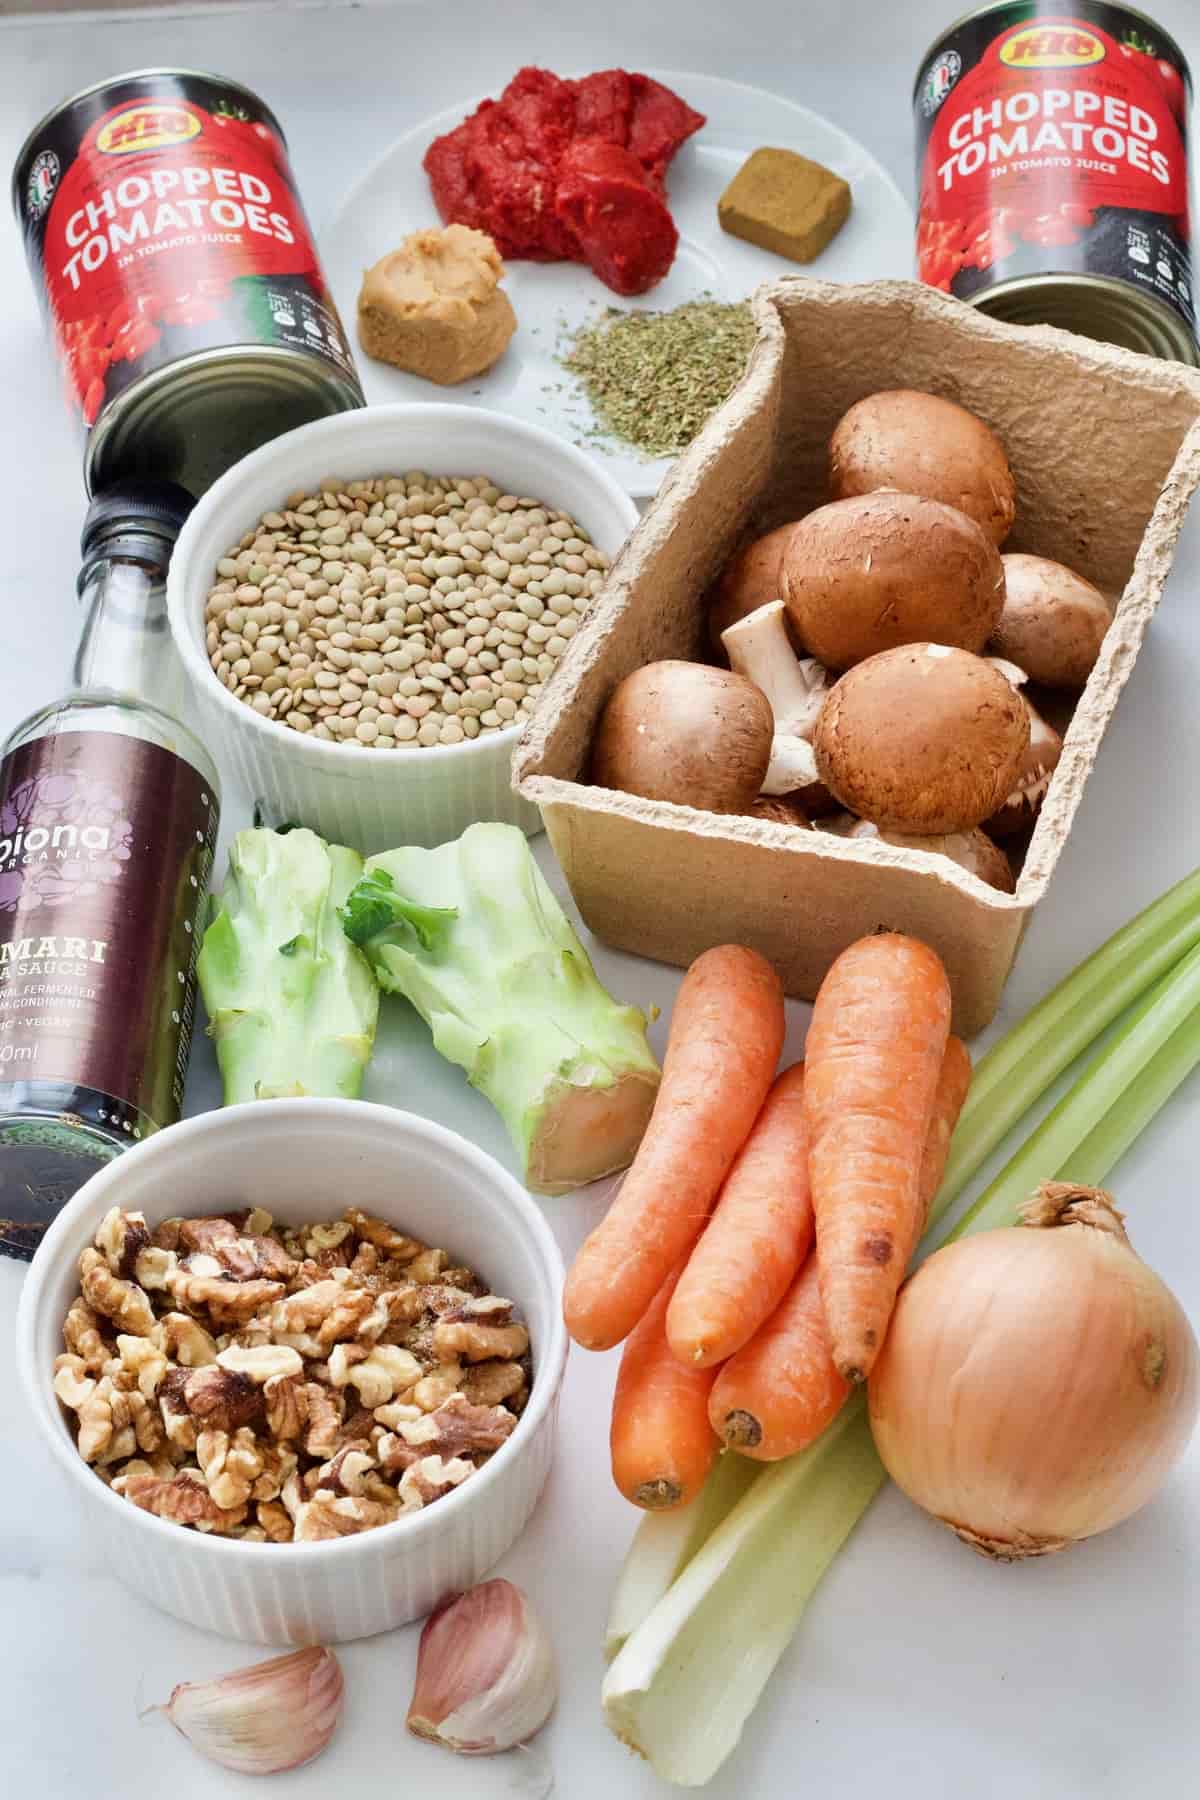 Ingredients for making lentil ragu.